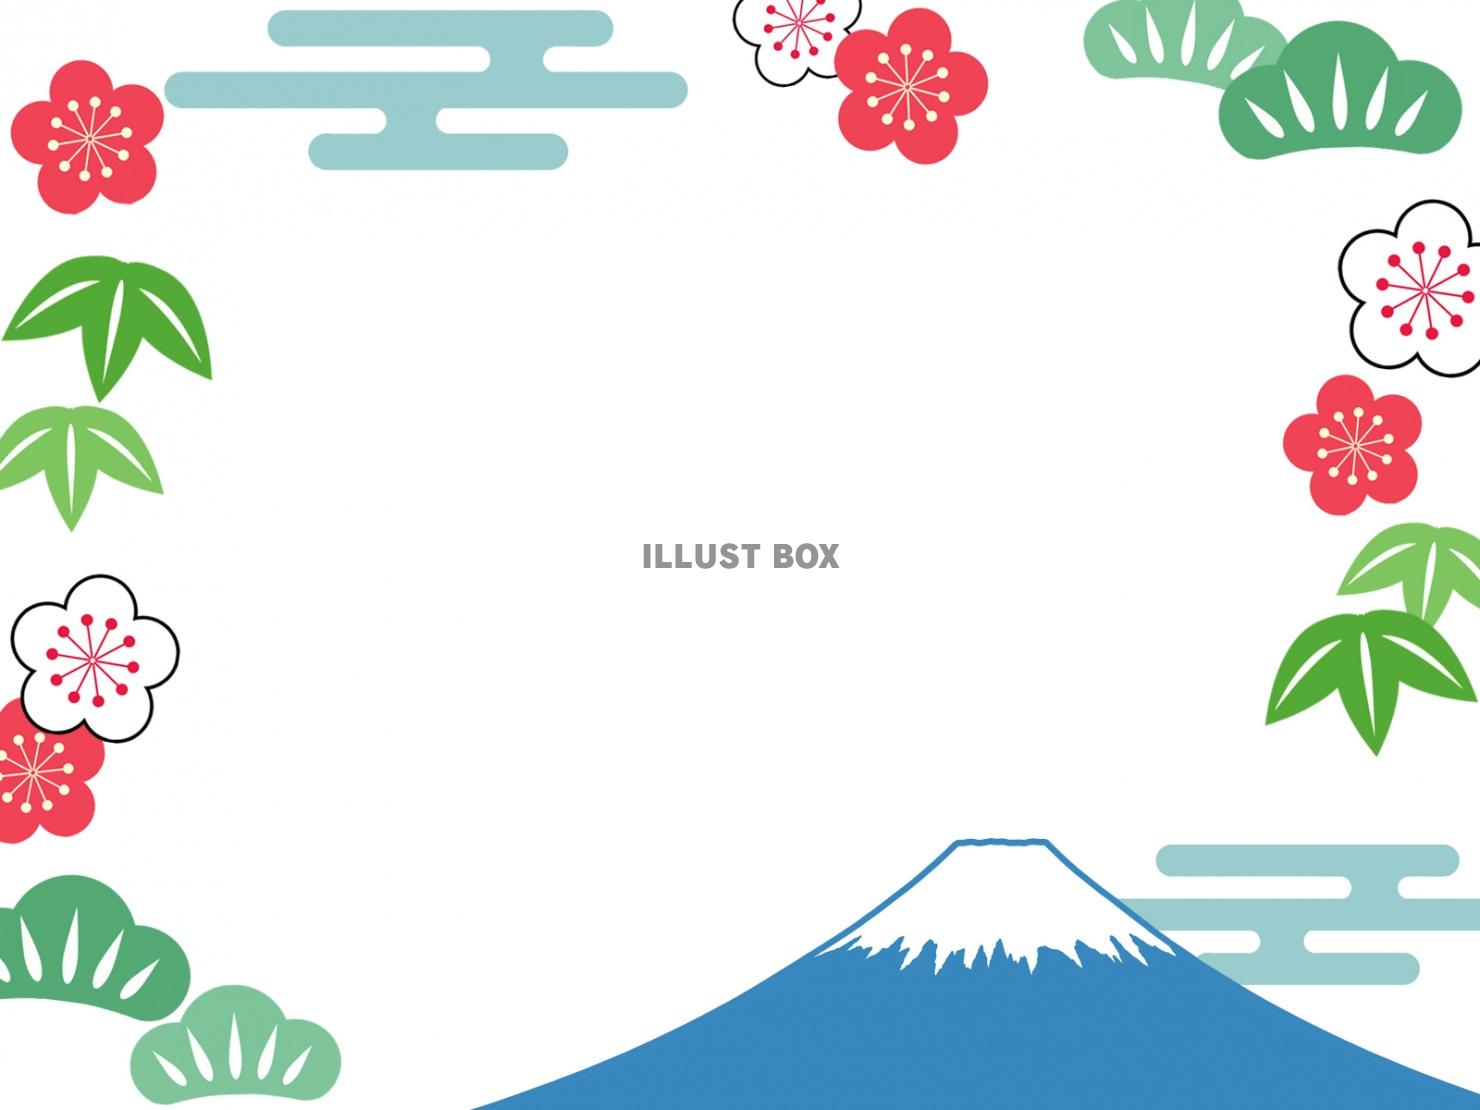 富士山と松竹梅の和柄フレームシンプル飾り枠イラスト